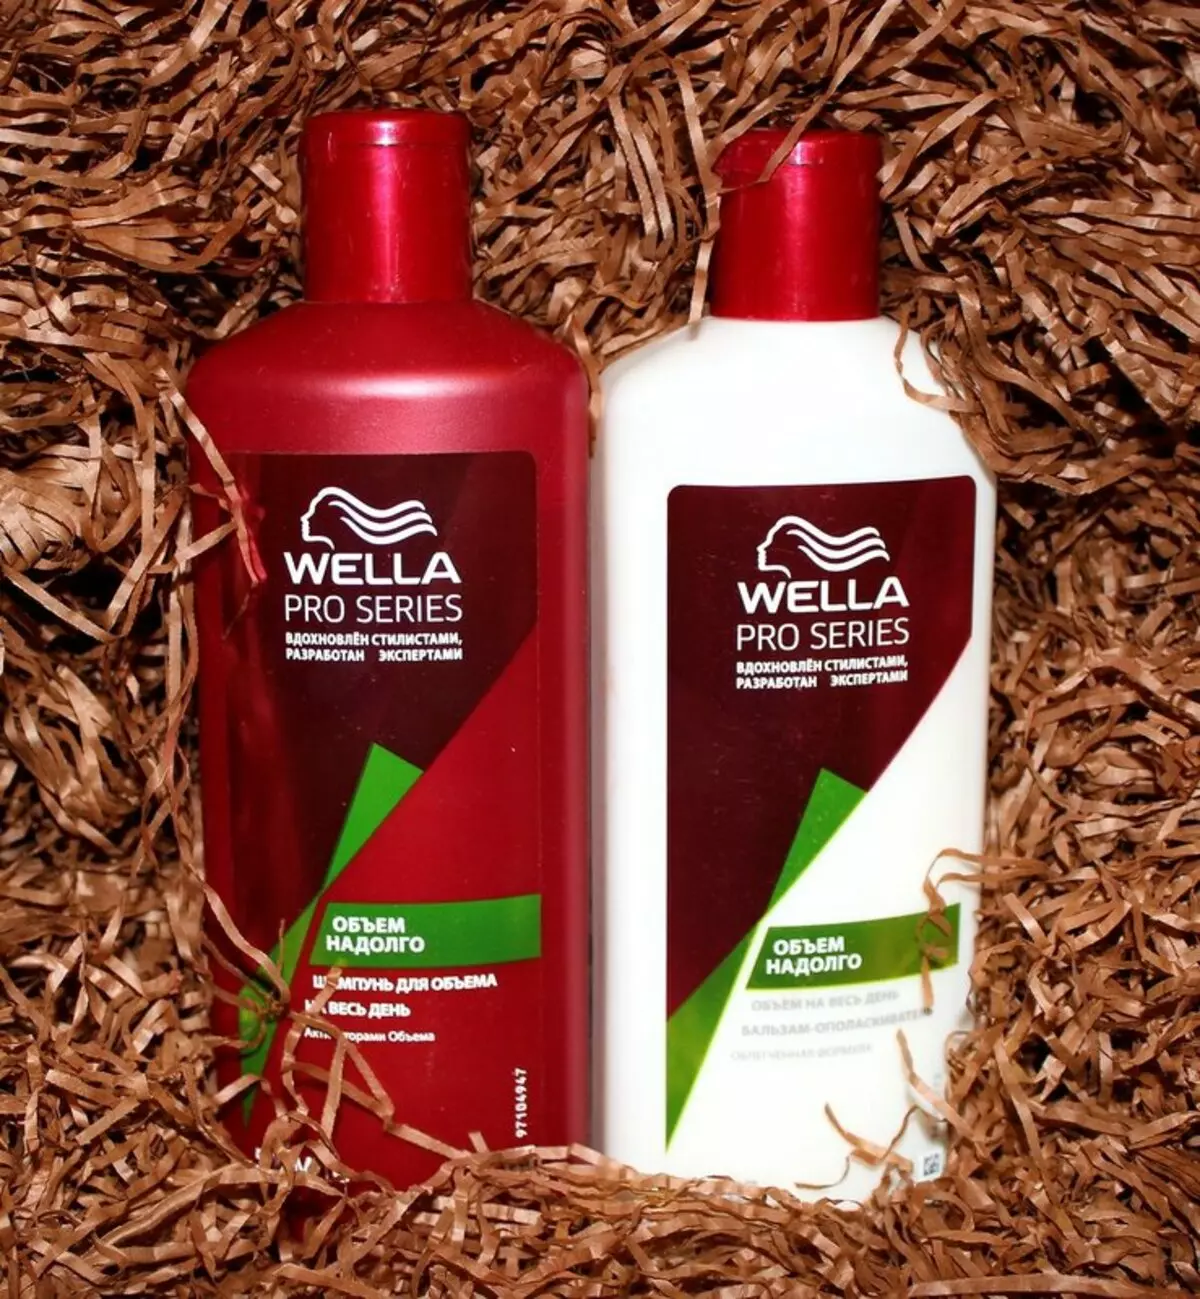 Wella Professional: Professzionális haj kozmetikumok áttekintése, előnyei és hátrányai 4770_7